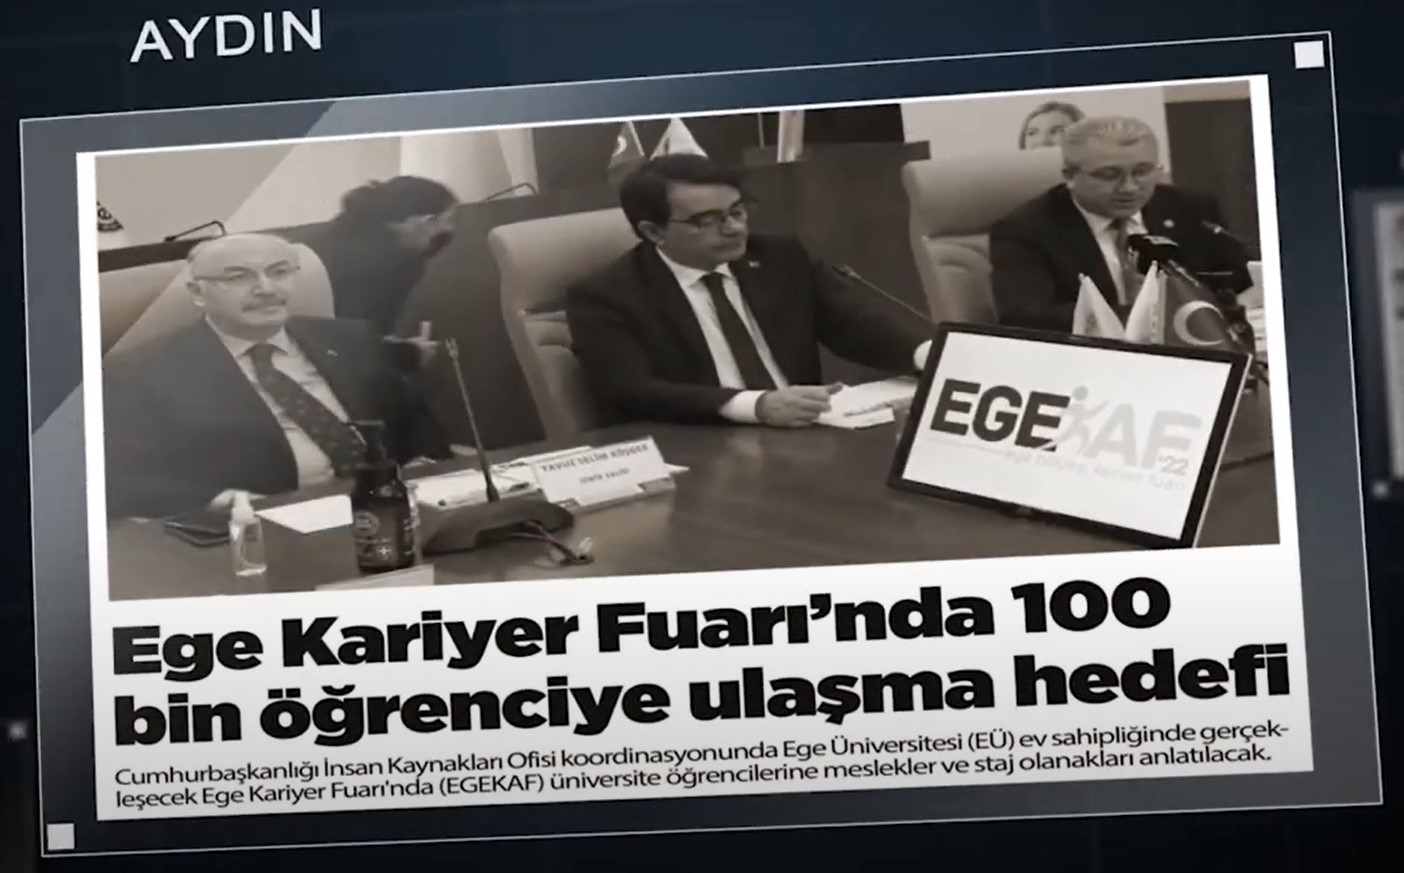 Ege Kariyer Fuarı´nda 100 bin öğrenciye ulaşma hedefi - Aydın Gazetesi